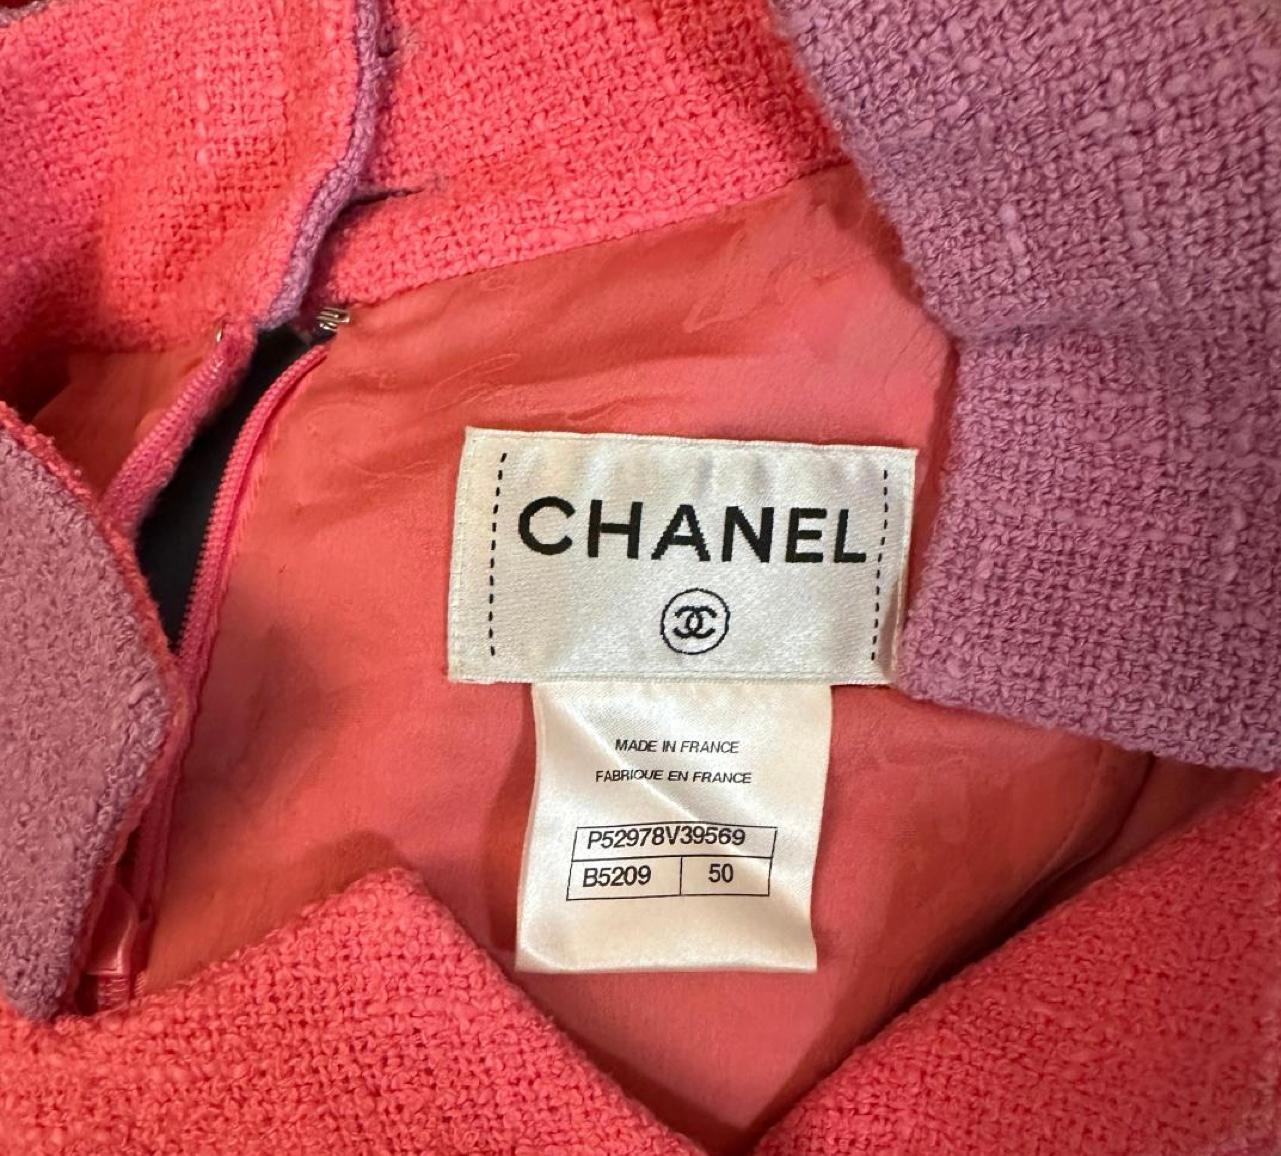 Chanel Paris / Seoul Runway Tweed Dress 3